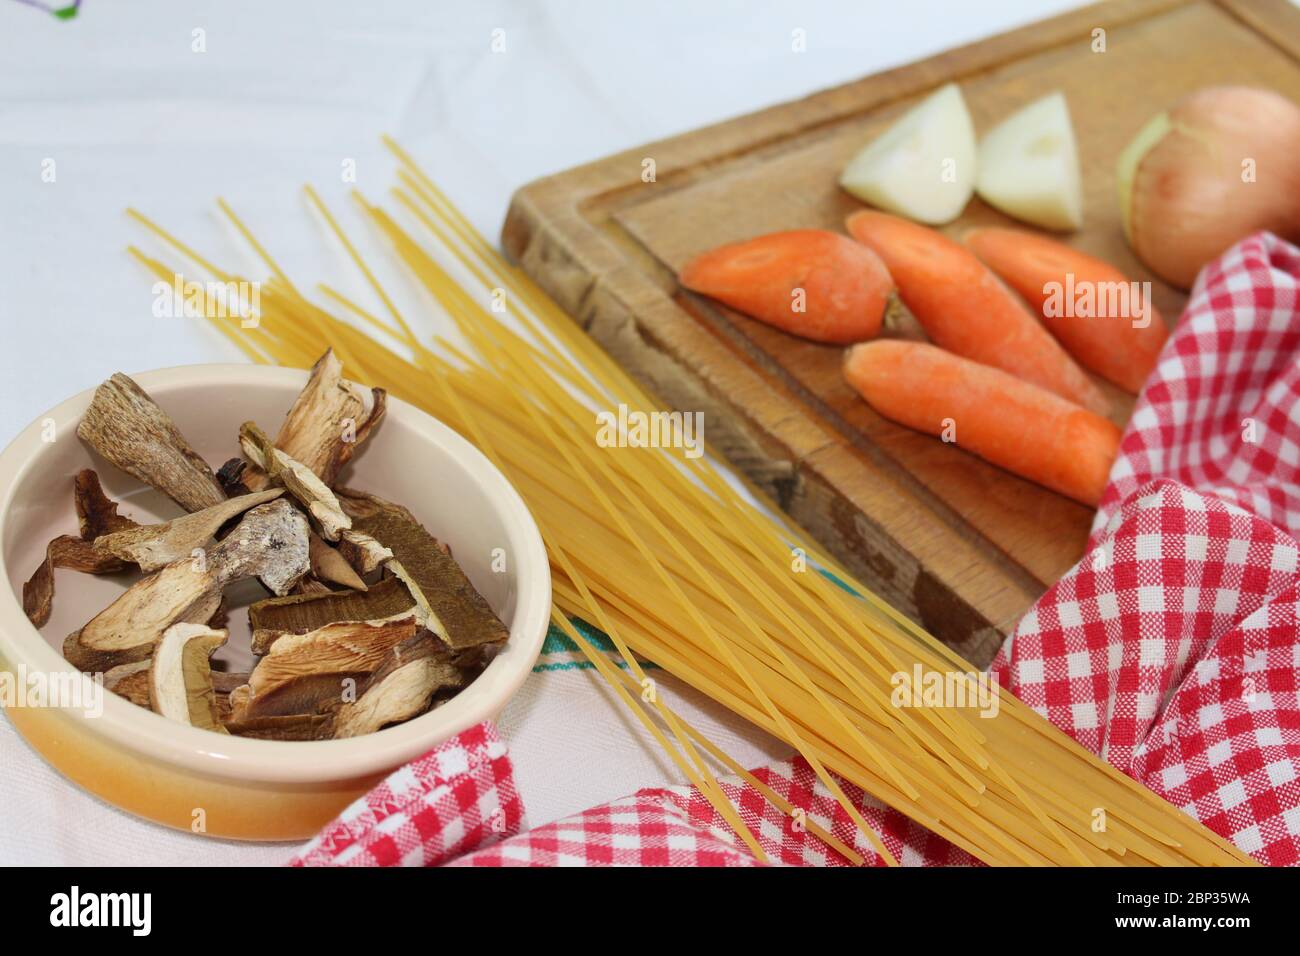 Produits alimentaires disposés sur la table à volants, avec des carrés rouges et blancs. Cuisine méditerranéenne italienne avec spaghetti et champignons porcini séchés. Banque D'Images